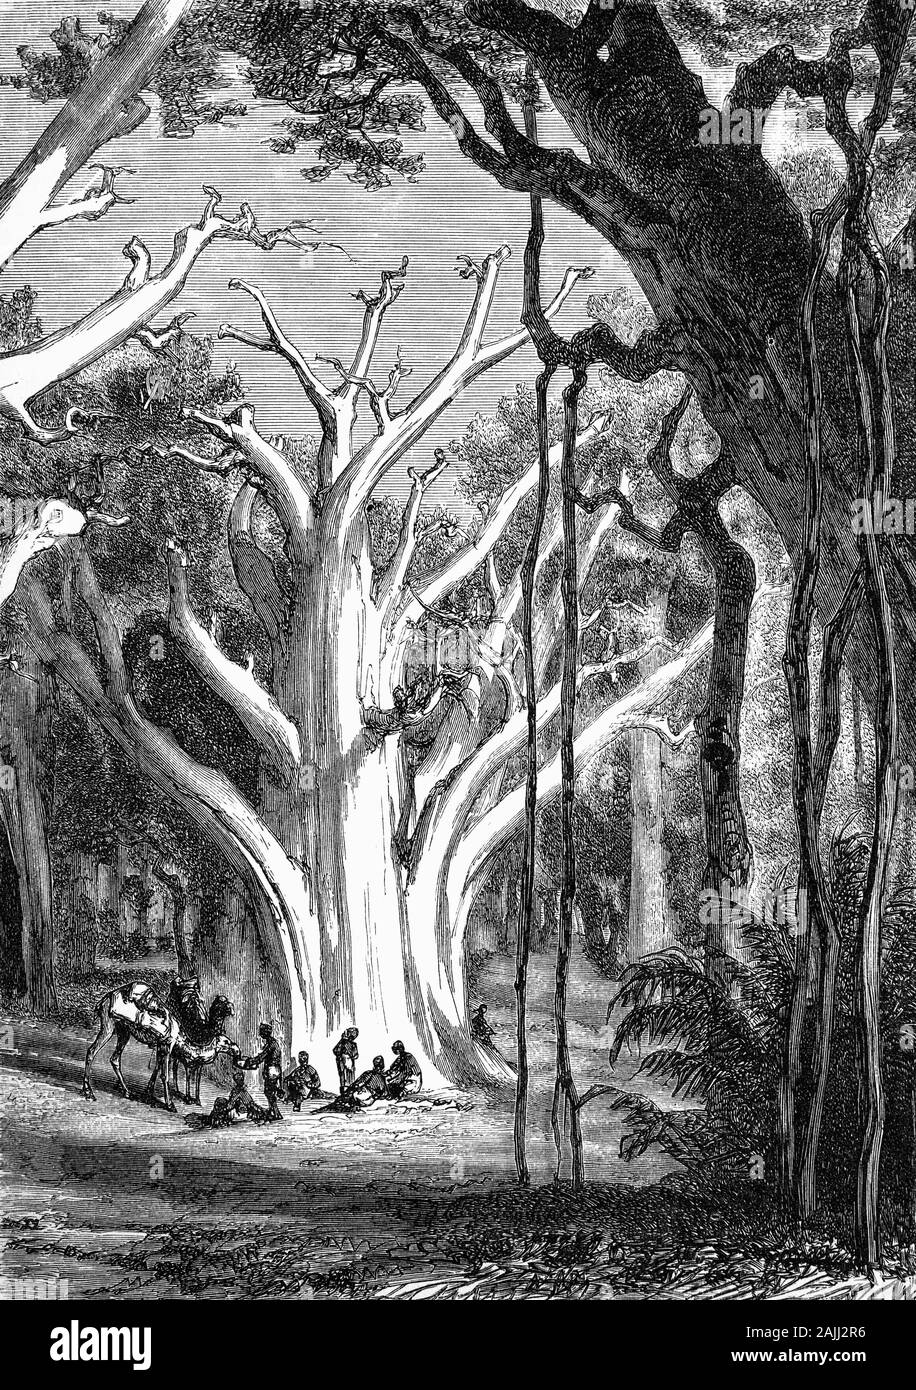 Pflanzen: ein riesiger Baobob (Adansonia digitata) ist die am weitesten verbreitete Baumart aus der Gattung der Adansonia, die baobabs, und ist in den afrikanischen Kontinent. Sie sind in der Regel in trockenen, heißen Savannen Afrikas südlich der Sahara, wo Sie dominieren die Landschaft gefunden und kann die Anwesenheit eines Wasserlaufs offenbaren. Sie wurden traditionell als Quelle von Nahrung, Wasser, Gesundheit Hilfsmittel oder Orte der Zuflucht bewertet und in Legenden und Aberglauben durchdrungen. Stockfoto